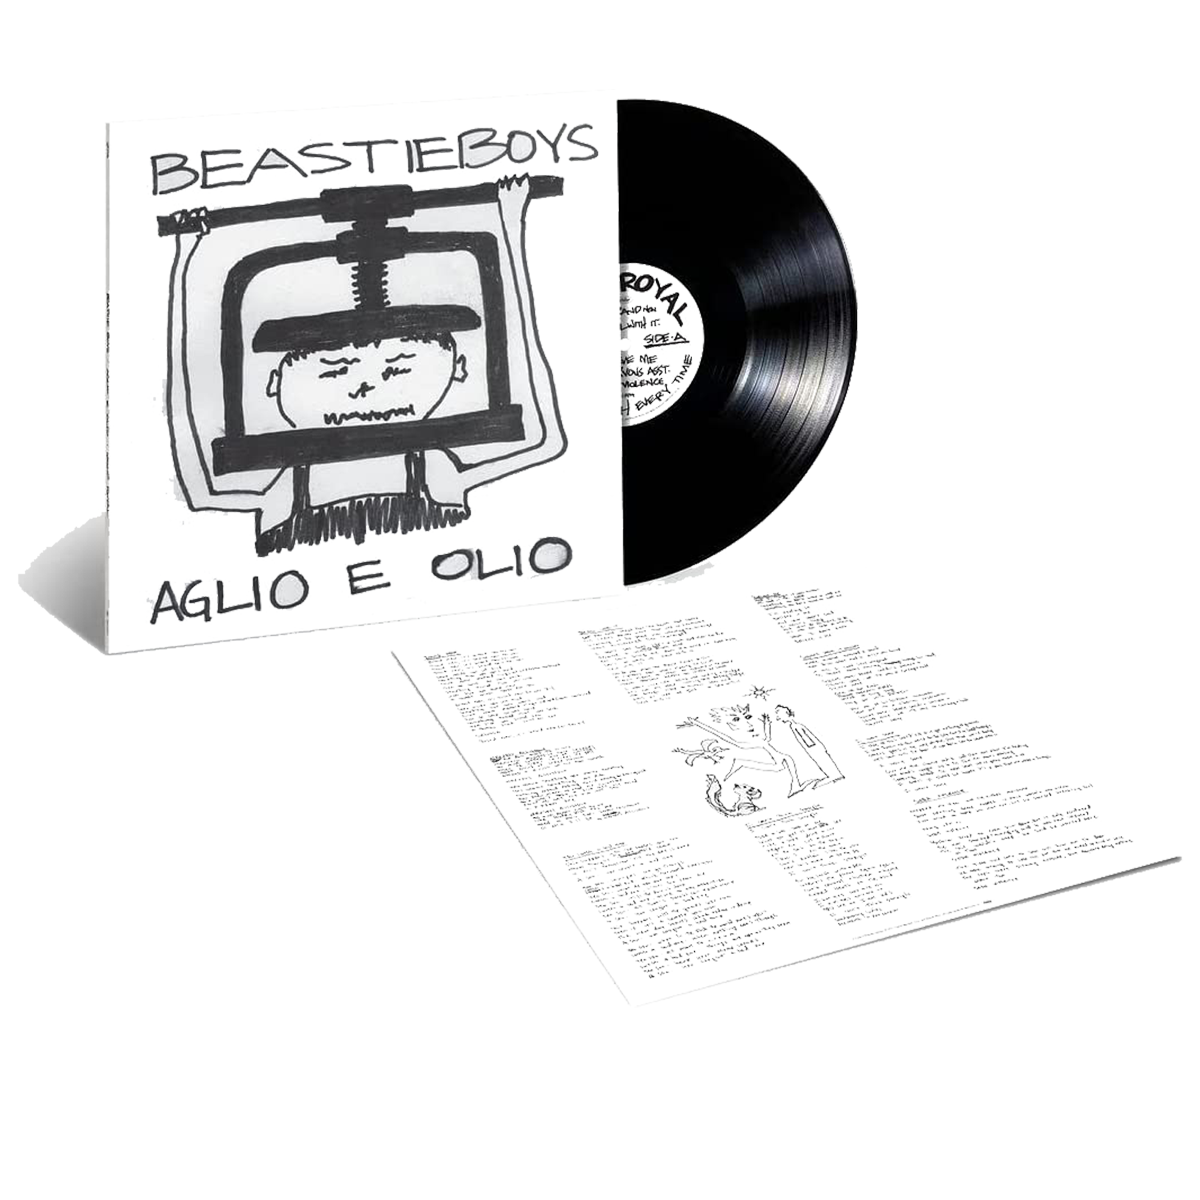 Beastie Boys - Aglio E Ollo: Vinyl LP